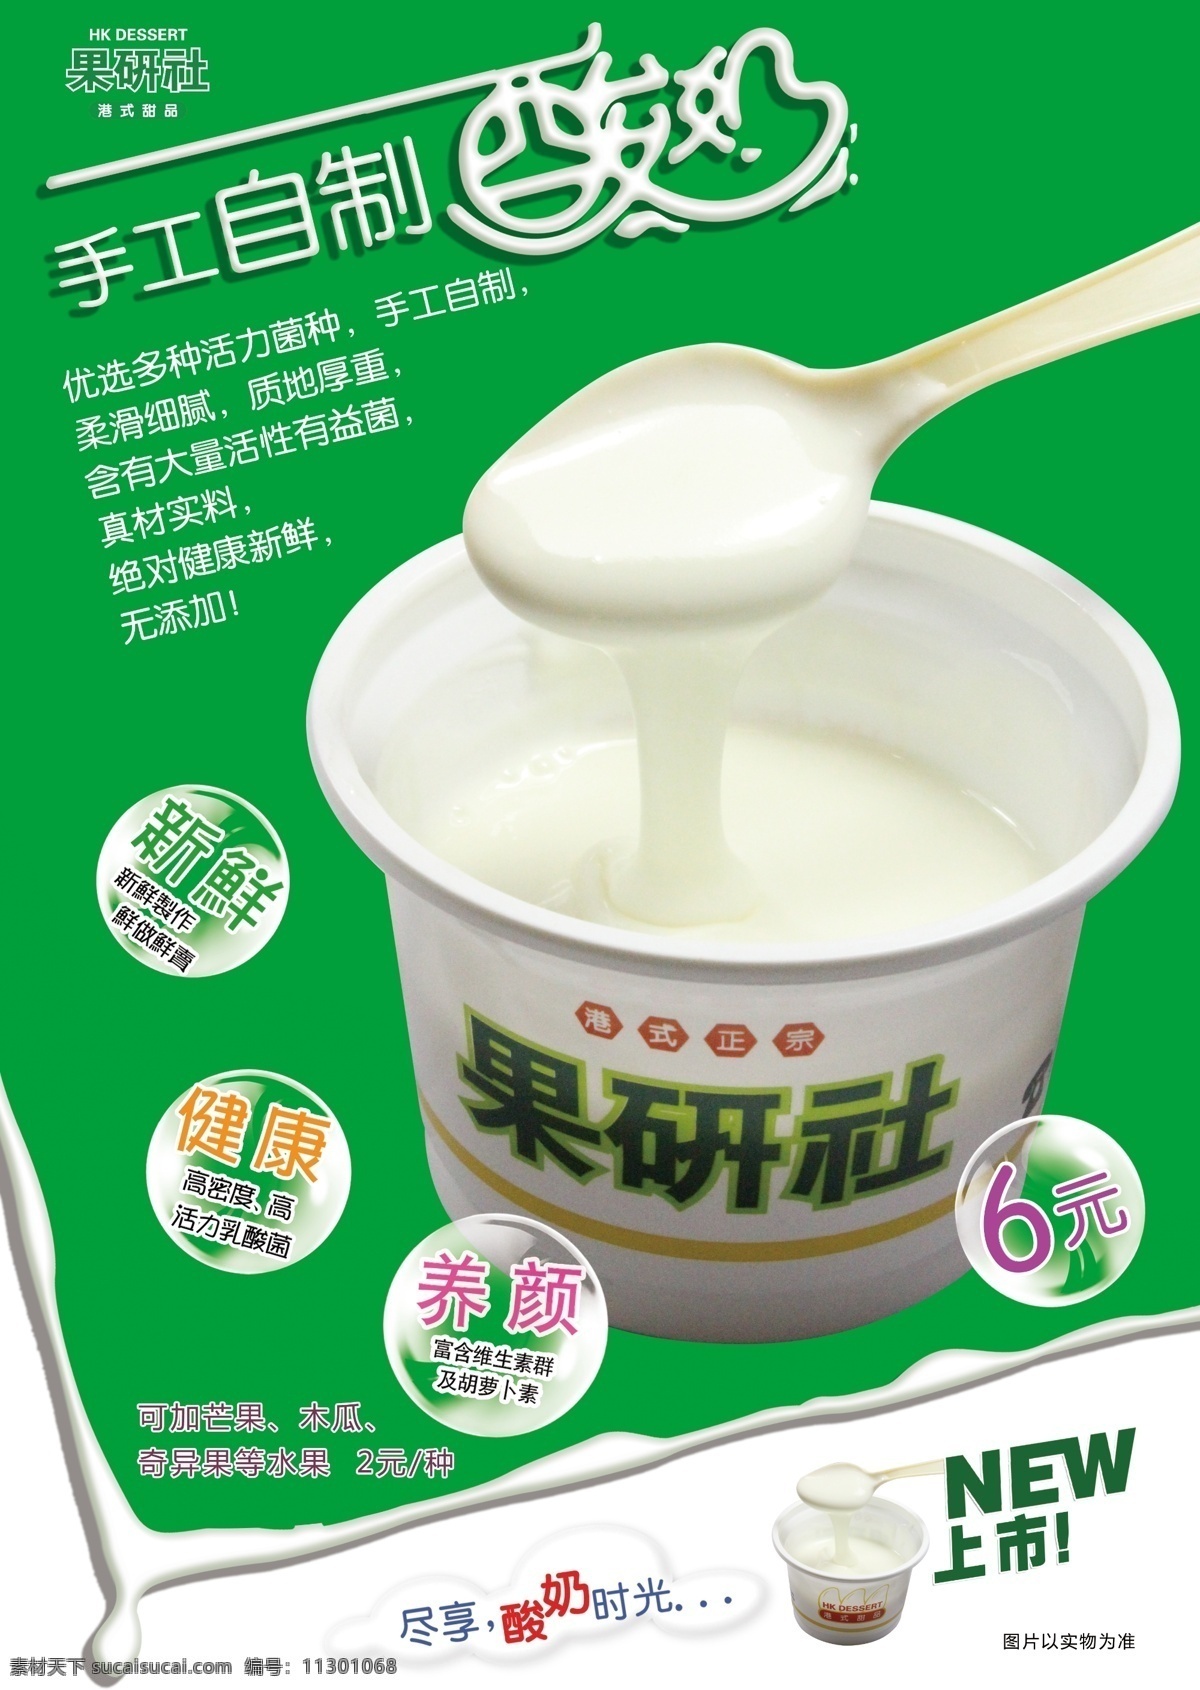 手工自制酸奶 奶茶 气泡文字 酸奶照片 自制酸奶 养颜 广告设计模板 源文件